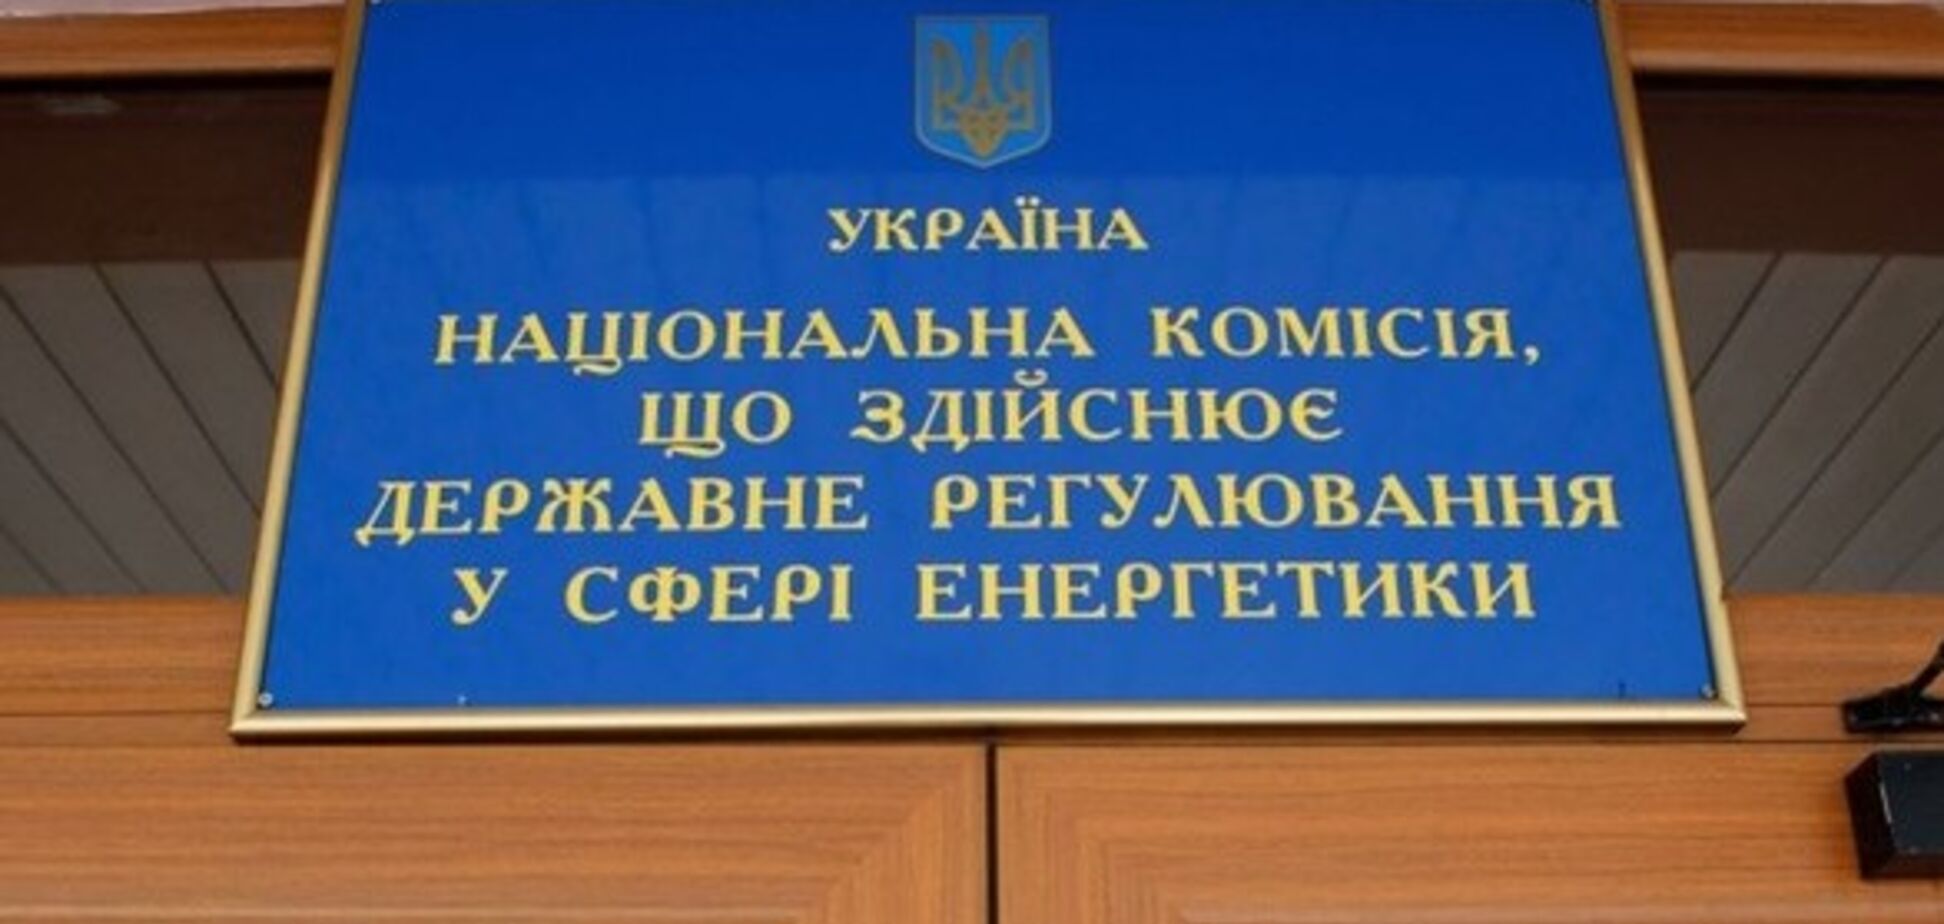 Керівництво НКРЕКП задекларувало 17 млн грн готівкою, – політолог